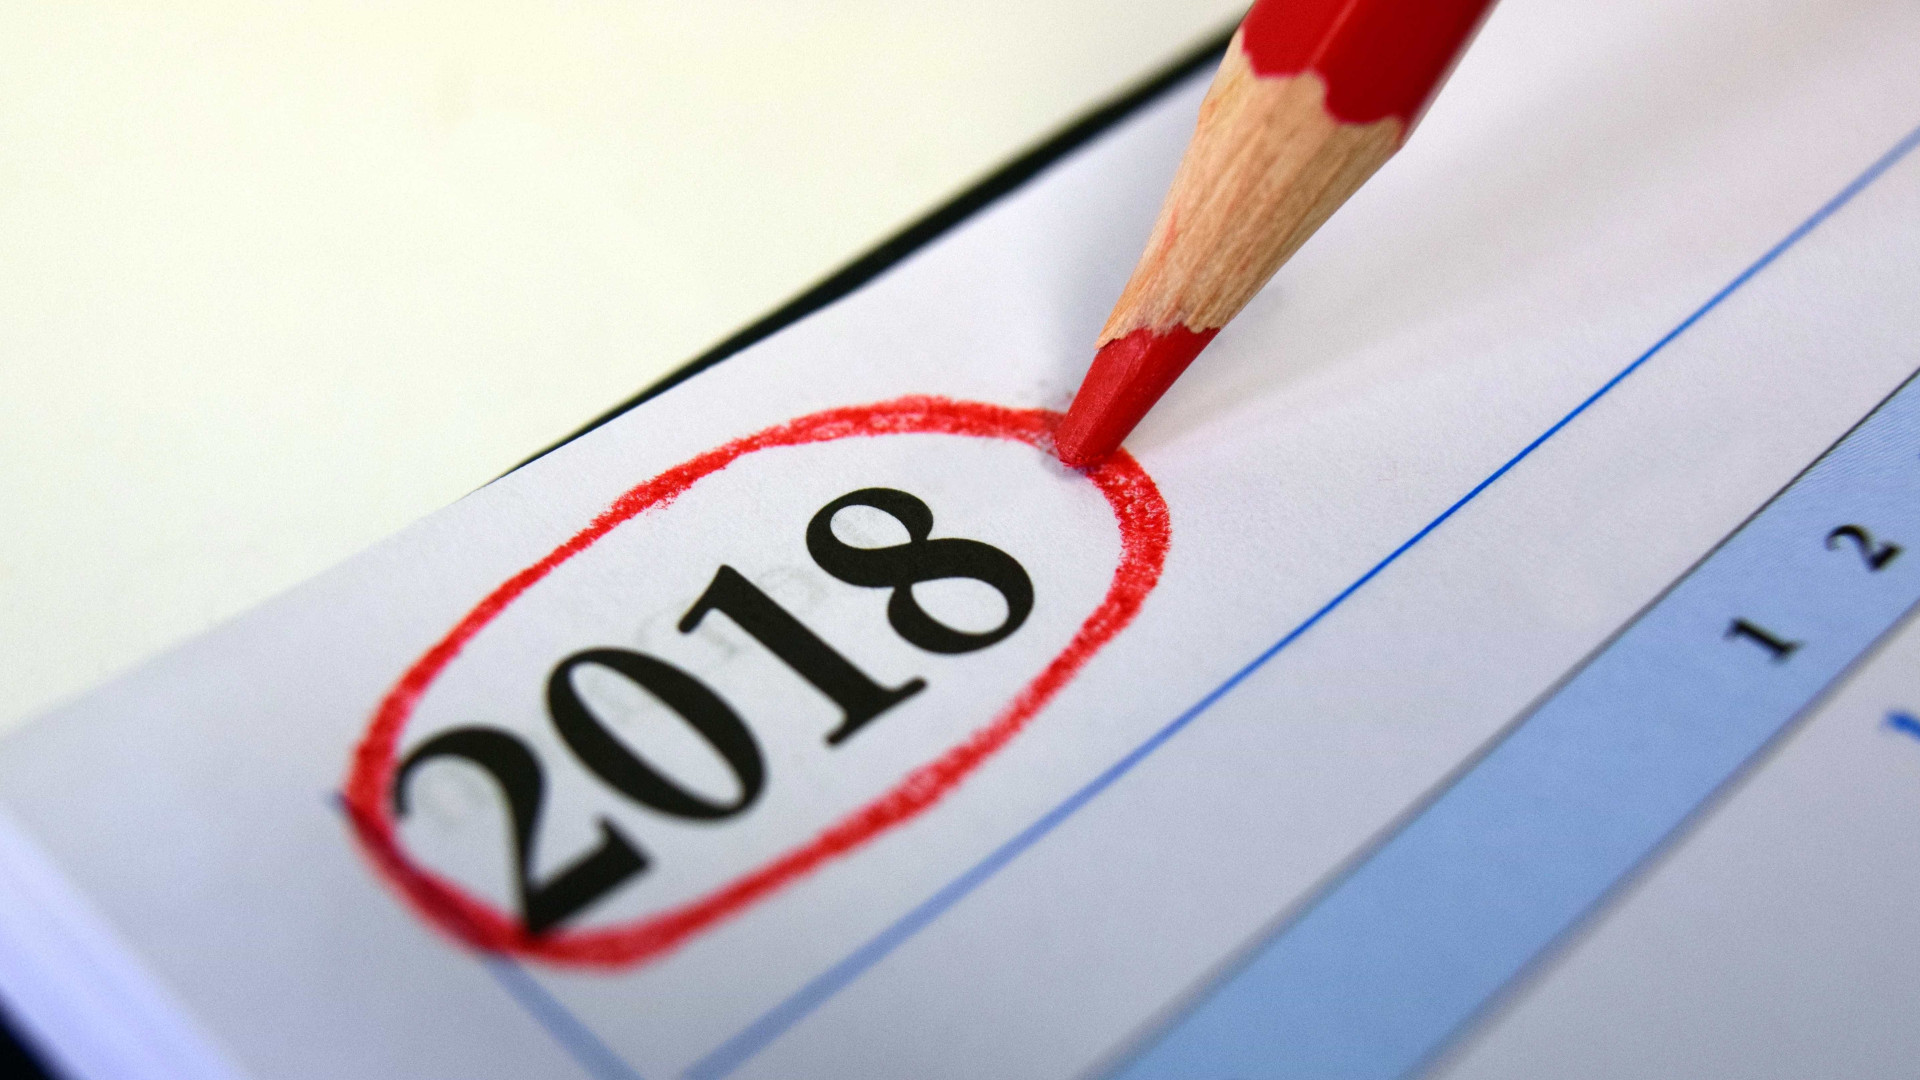 Veja a lista de feriados e pontos facultativos em 2018